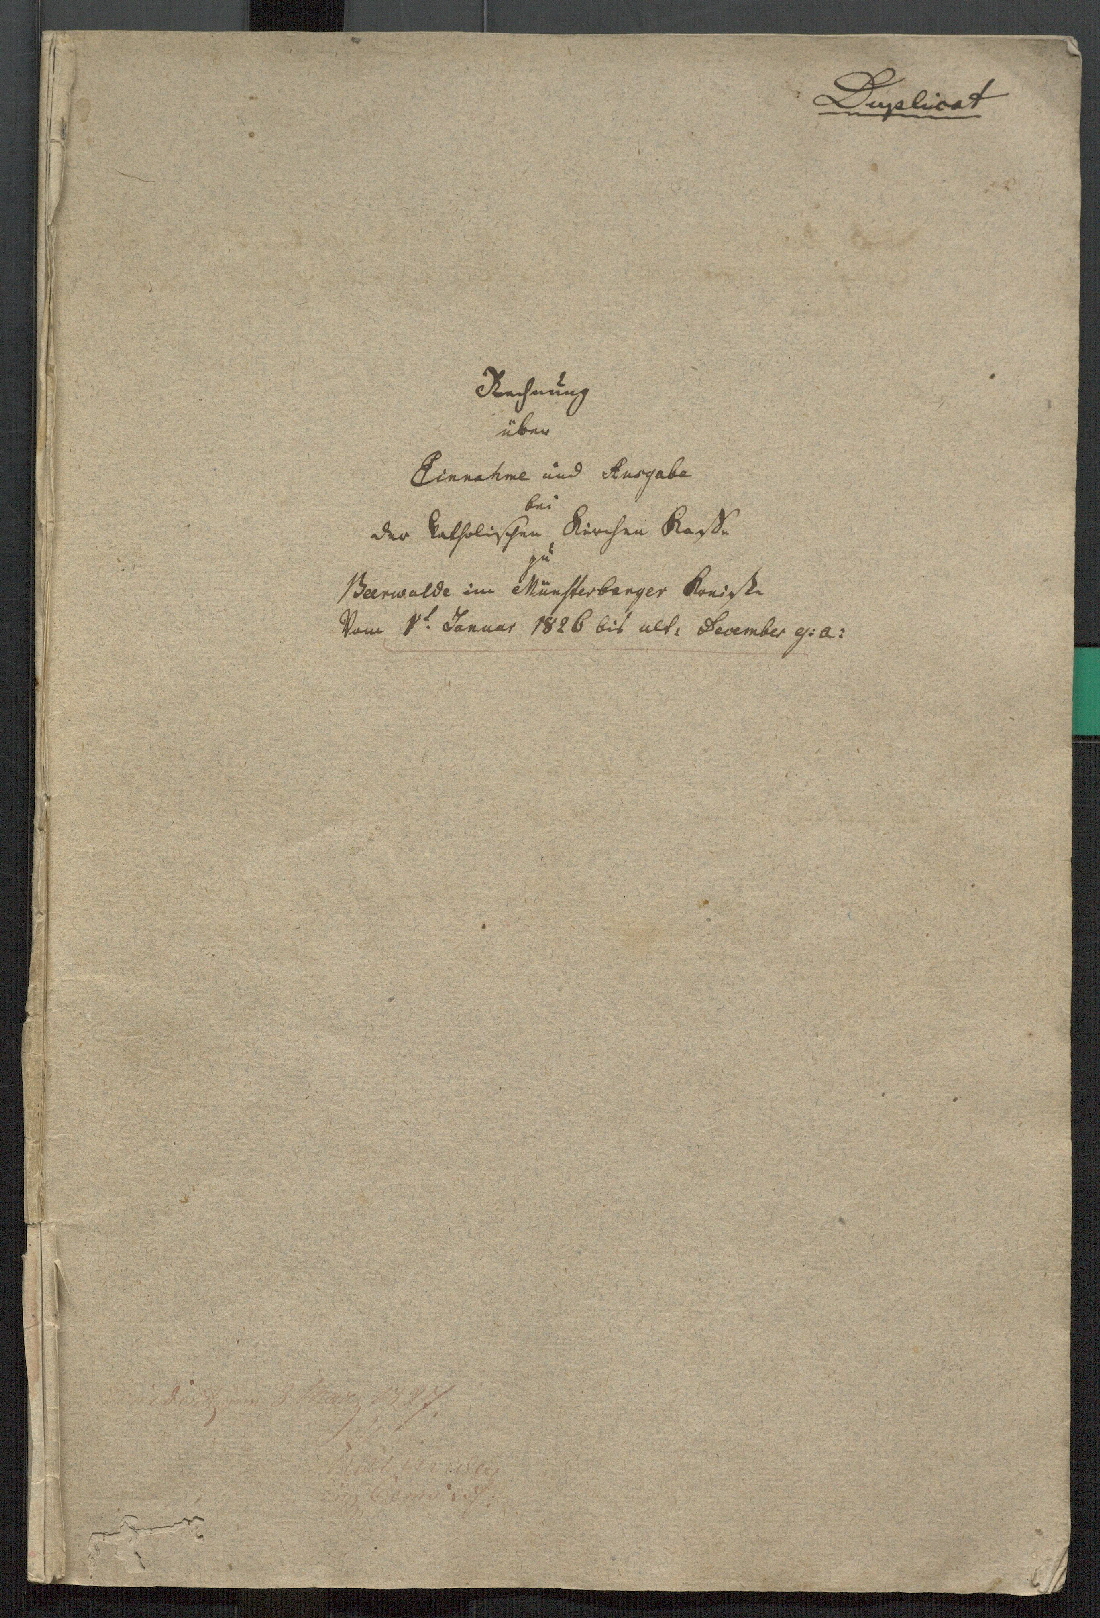 Bärwalder Kirchenkassenbuch 1826, Vorderseite